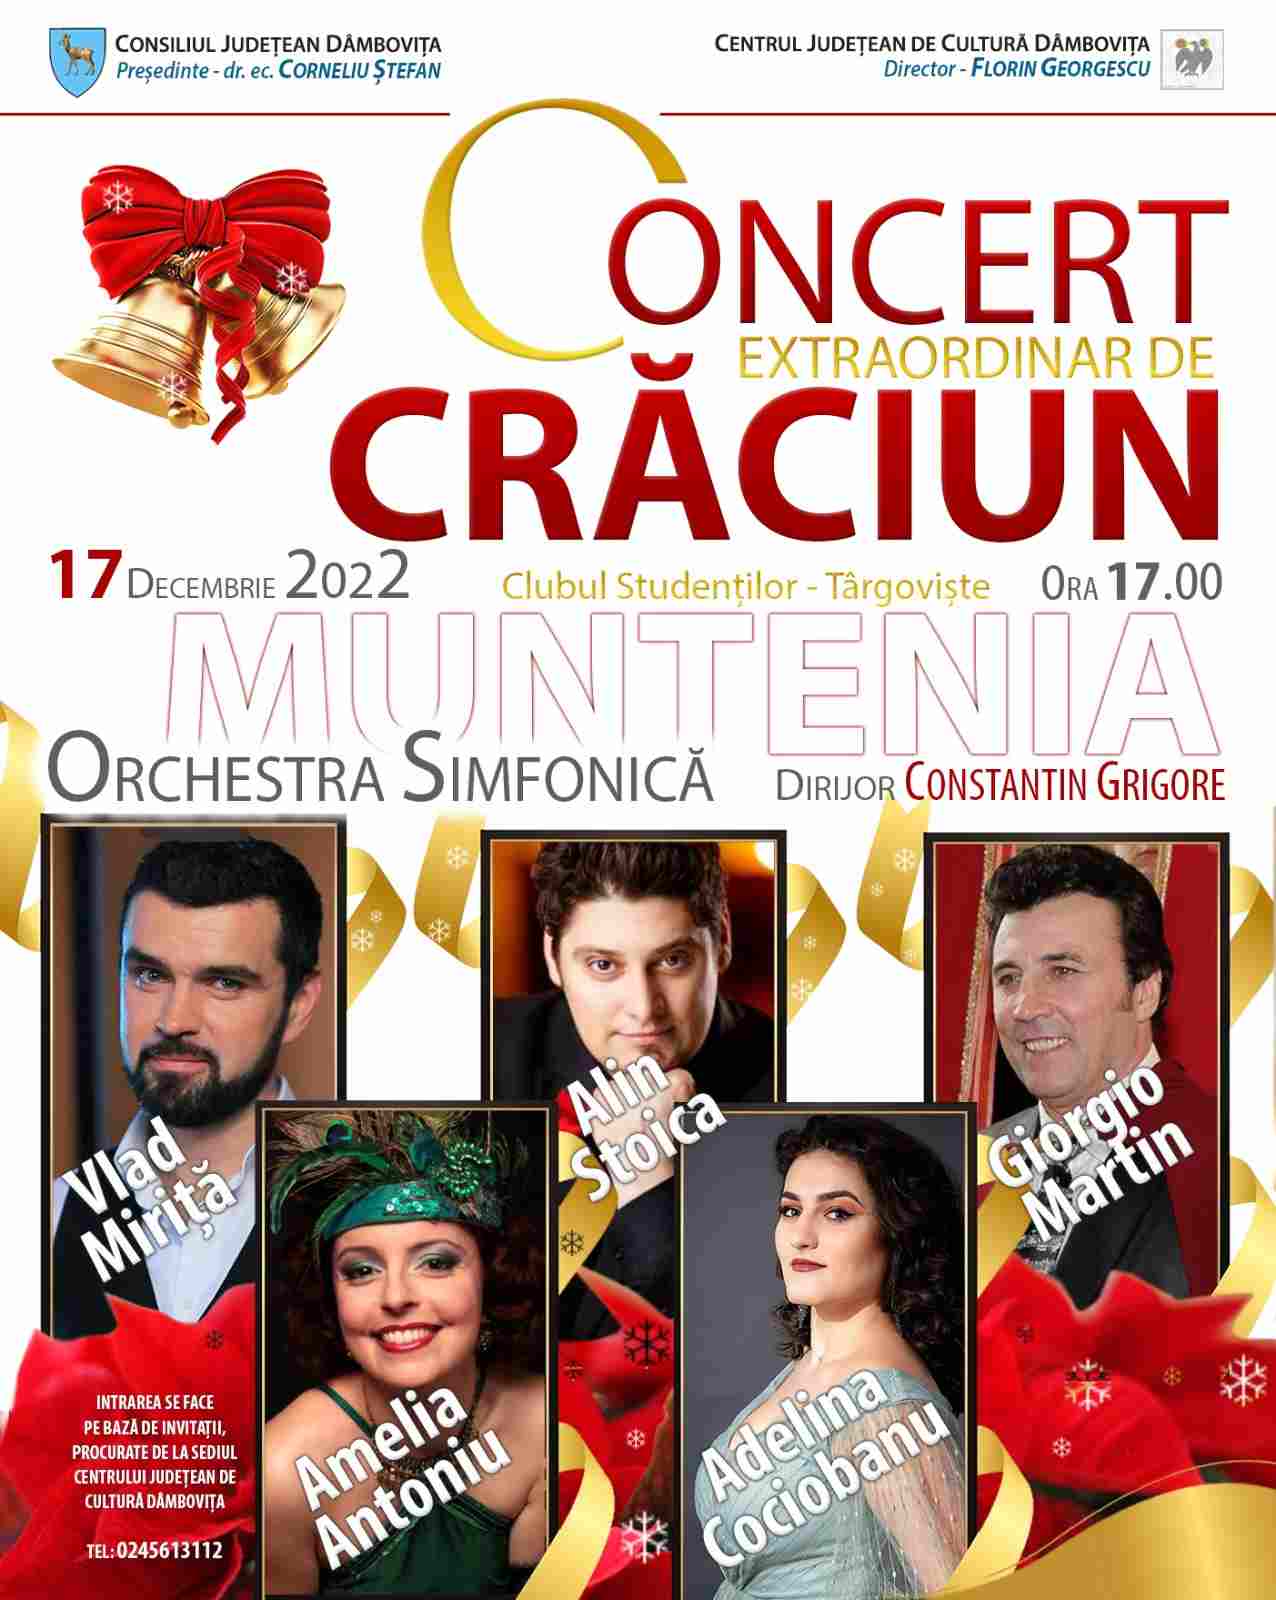  Concert extraordinar de Crăciun, susținut de Orchestra Simfonică „Muntenia”